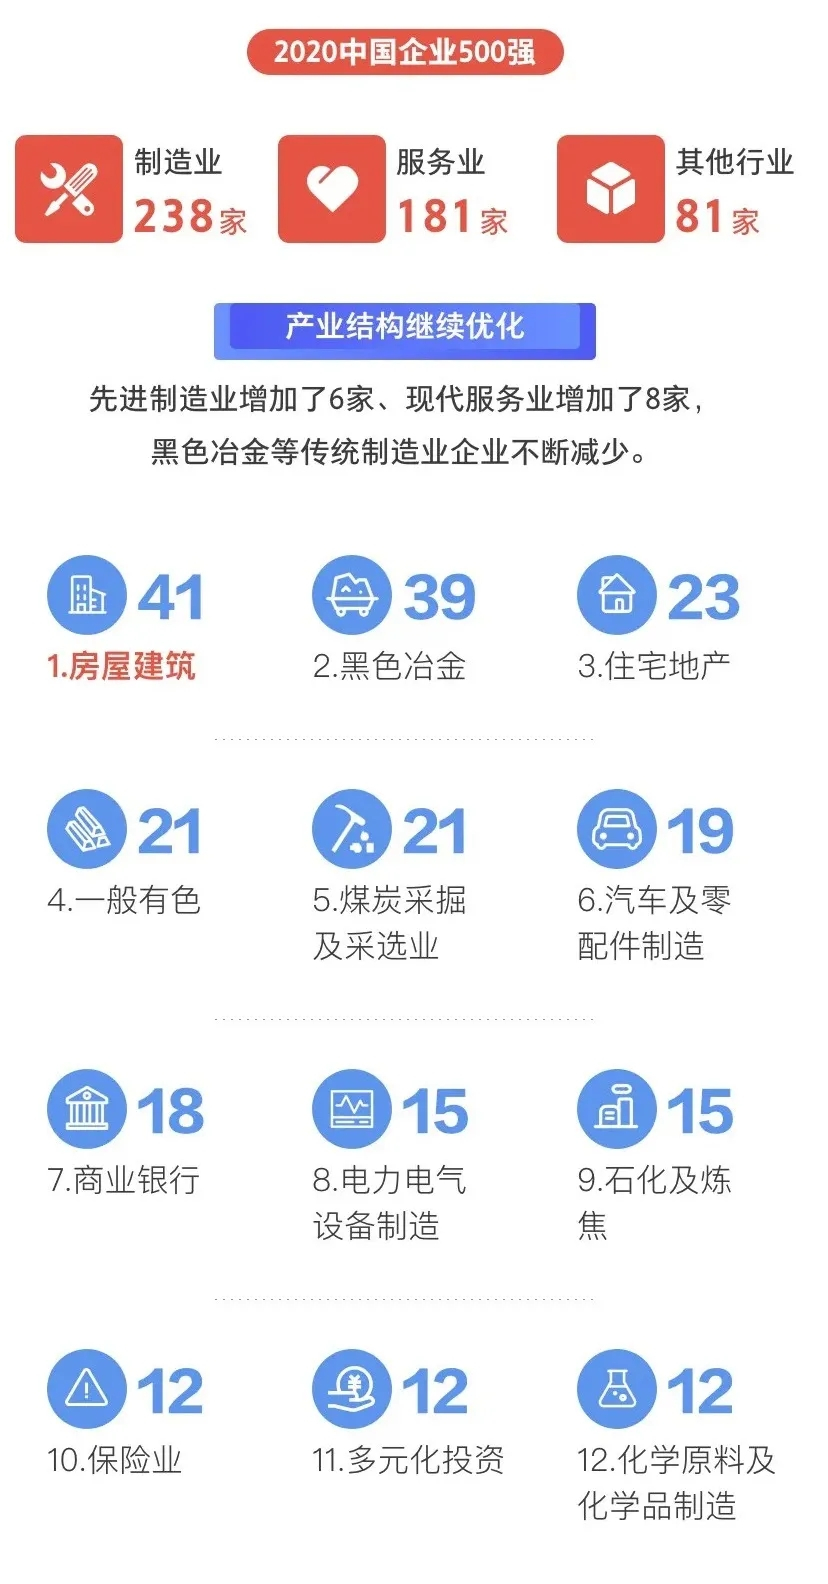 赞！浙江43家企业入选2020中国500强企业榜单（附全名单）